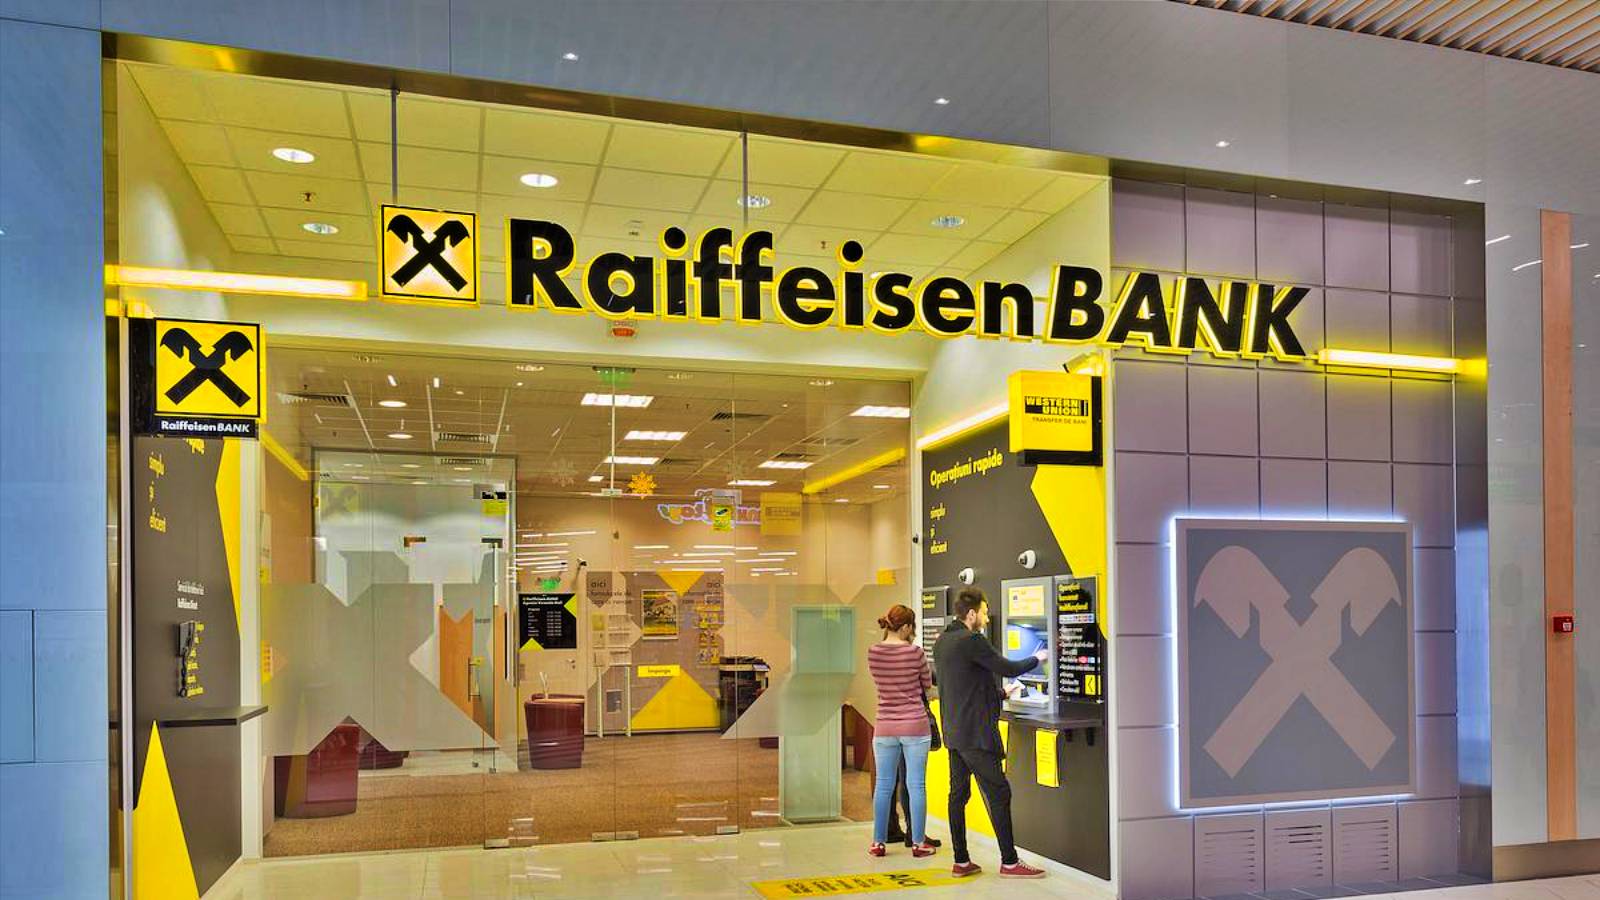 Raiffeisen Bank repaired